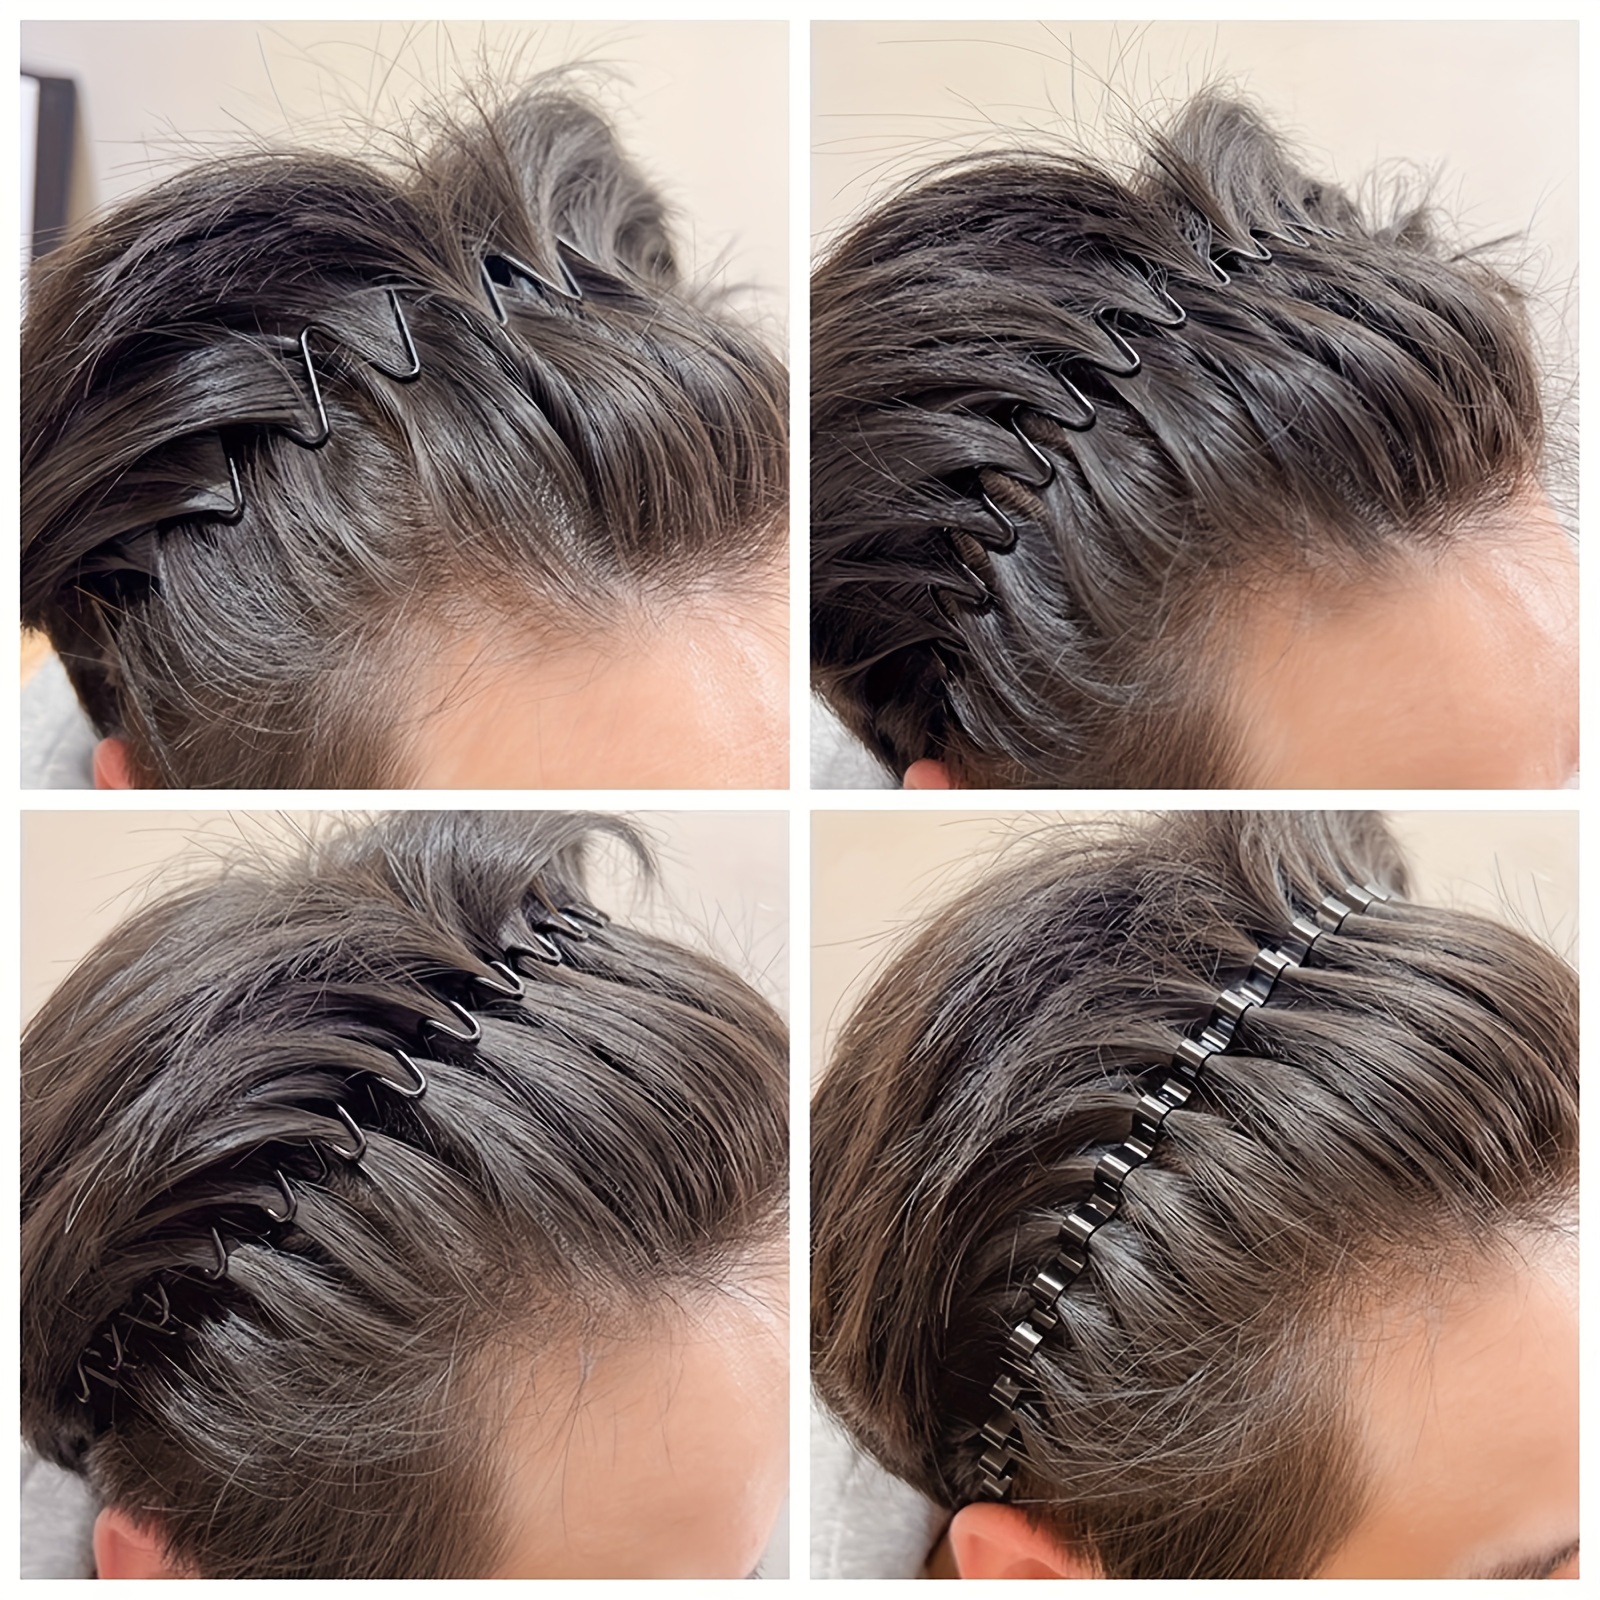 Men's Headbands for Long Hair  Headbands for Men's Hair – The Longhairs